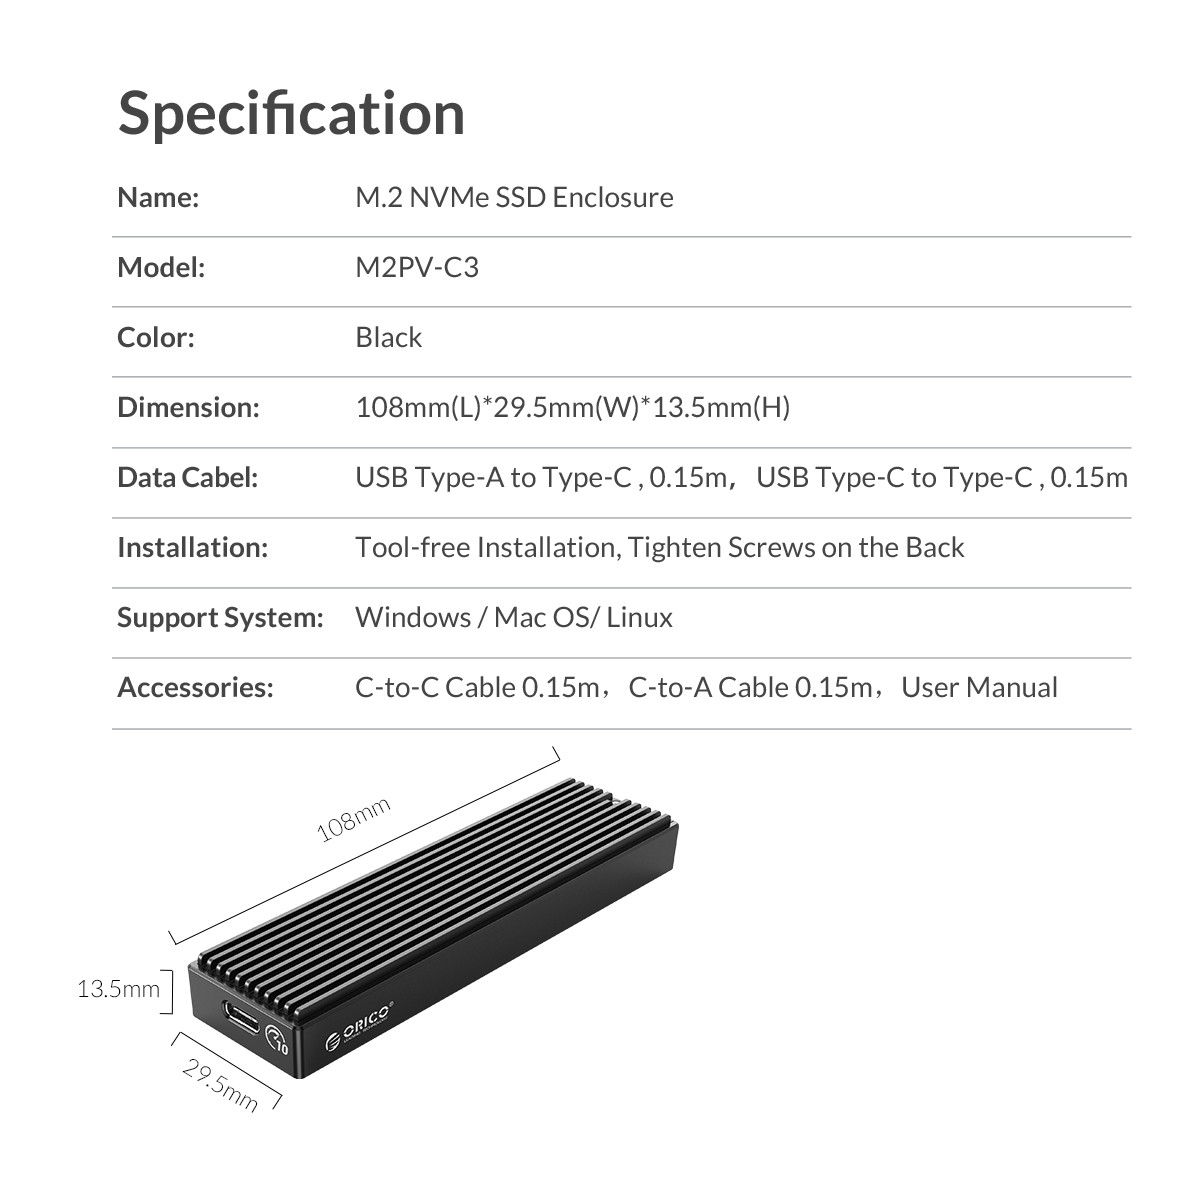 มุมมองเพิ่มเติมเกี่ยวกับ ORICO กล่องใส่ M2PV-C3 M.2 NVMe SSD Enclosure Black M2PV-C3 Type-C M.2 NVME NGFF case SSD Mobile Enclosure อลูมิเนียมอัลลอยด์ USB3.1，10Gbps ฮาร์ดดิส ฮาร์ดดิสพกพา ฮาร์ดไดรฟ์ภายนอก สีดำ